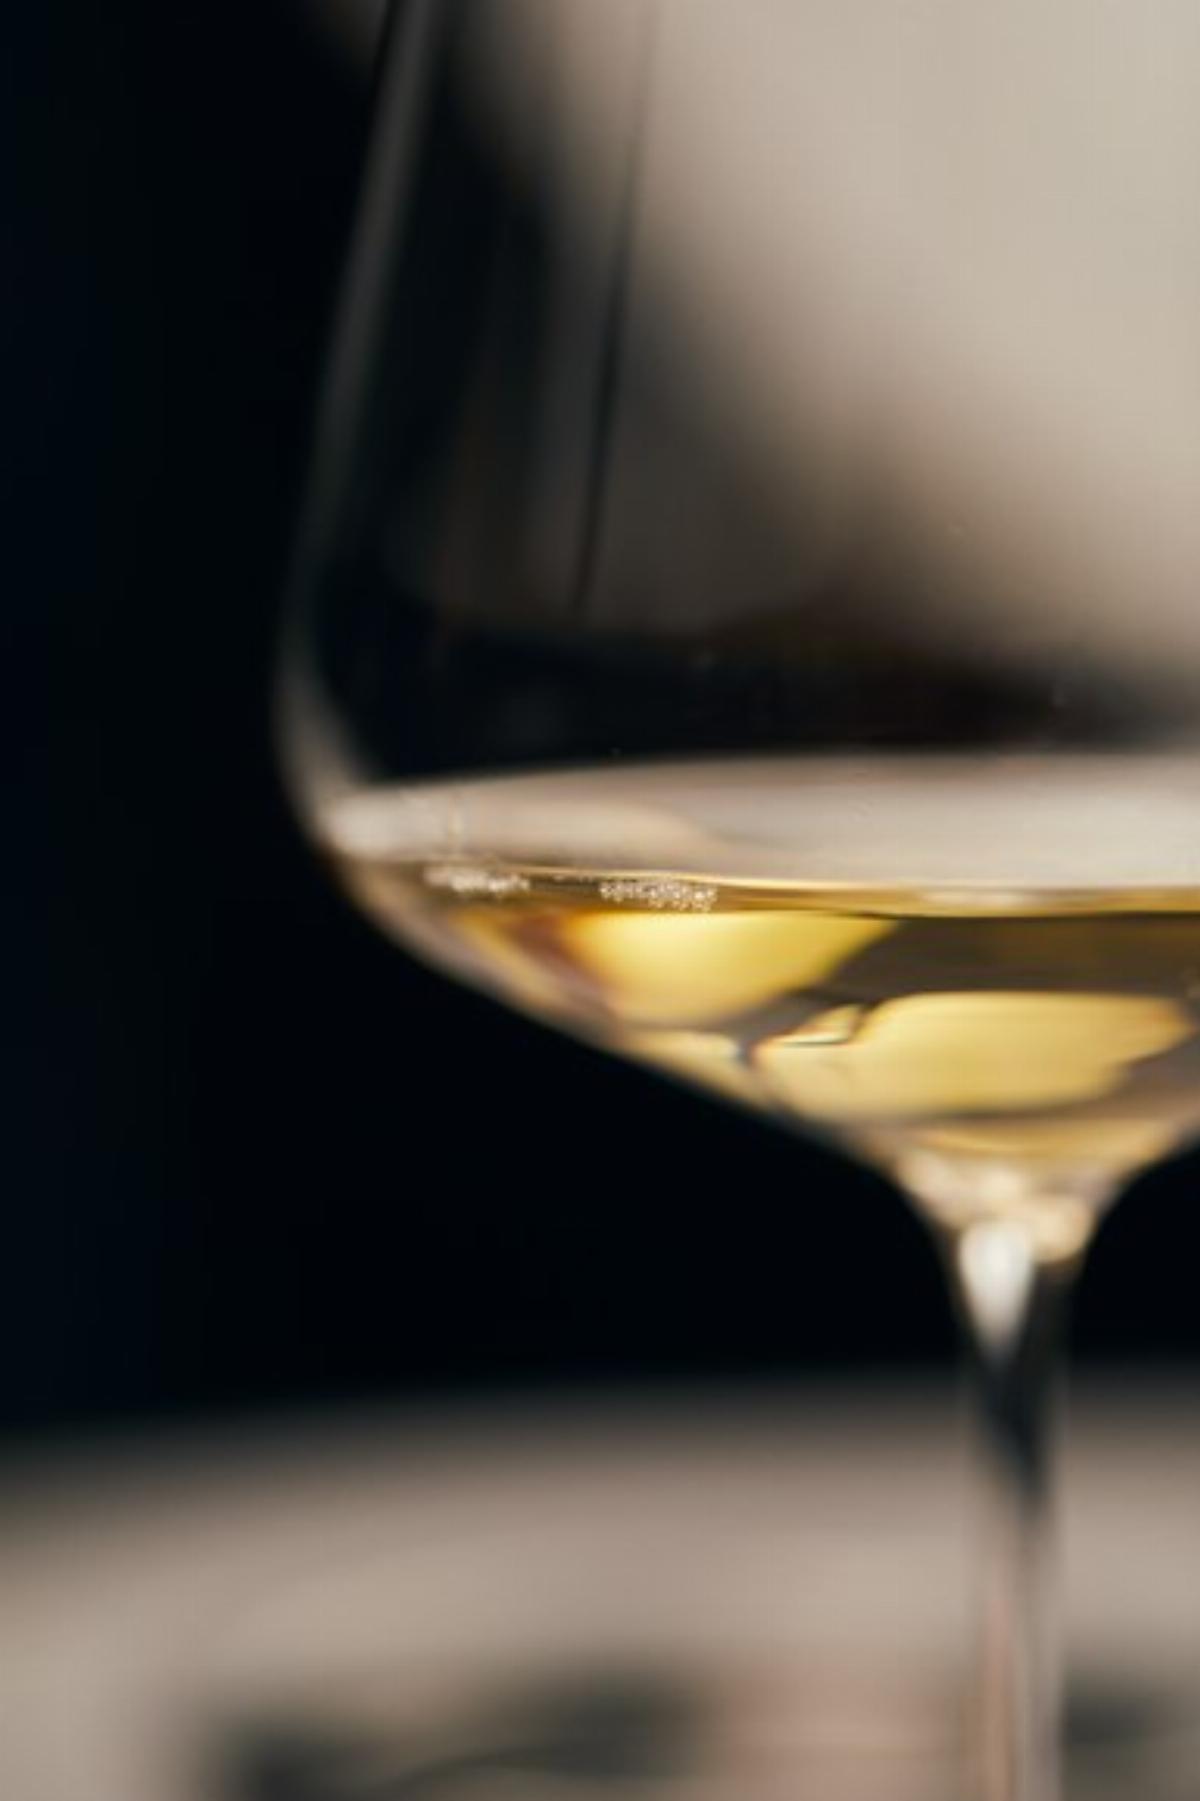 Les vins frais tels que le rosé ou le blanc sont des vins que l'on apprécie déguster rapidement